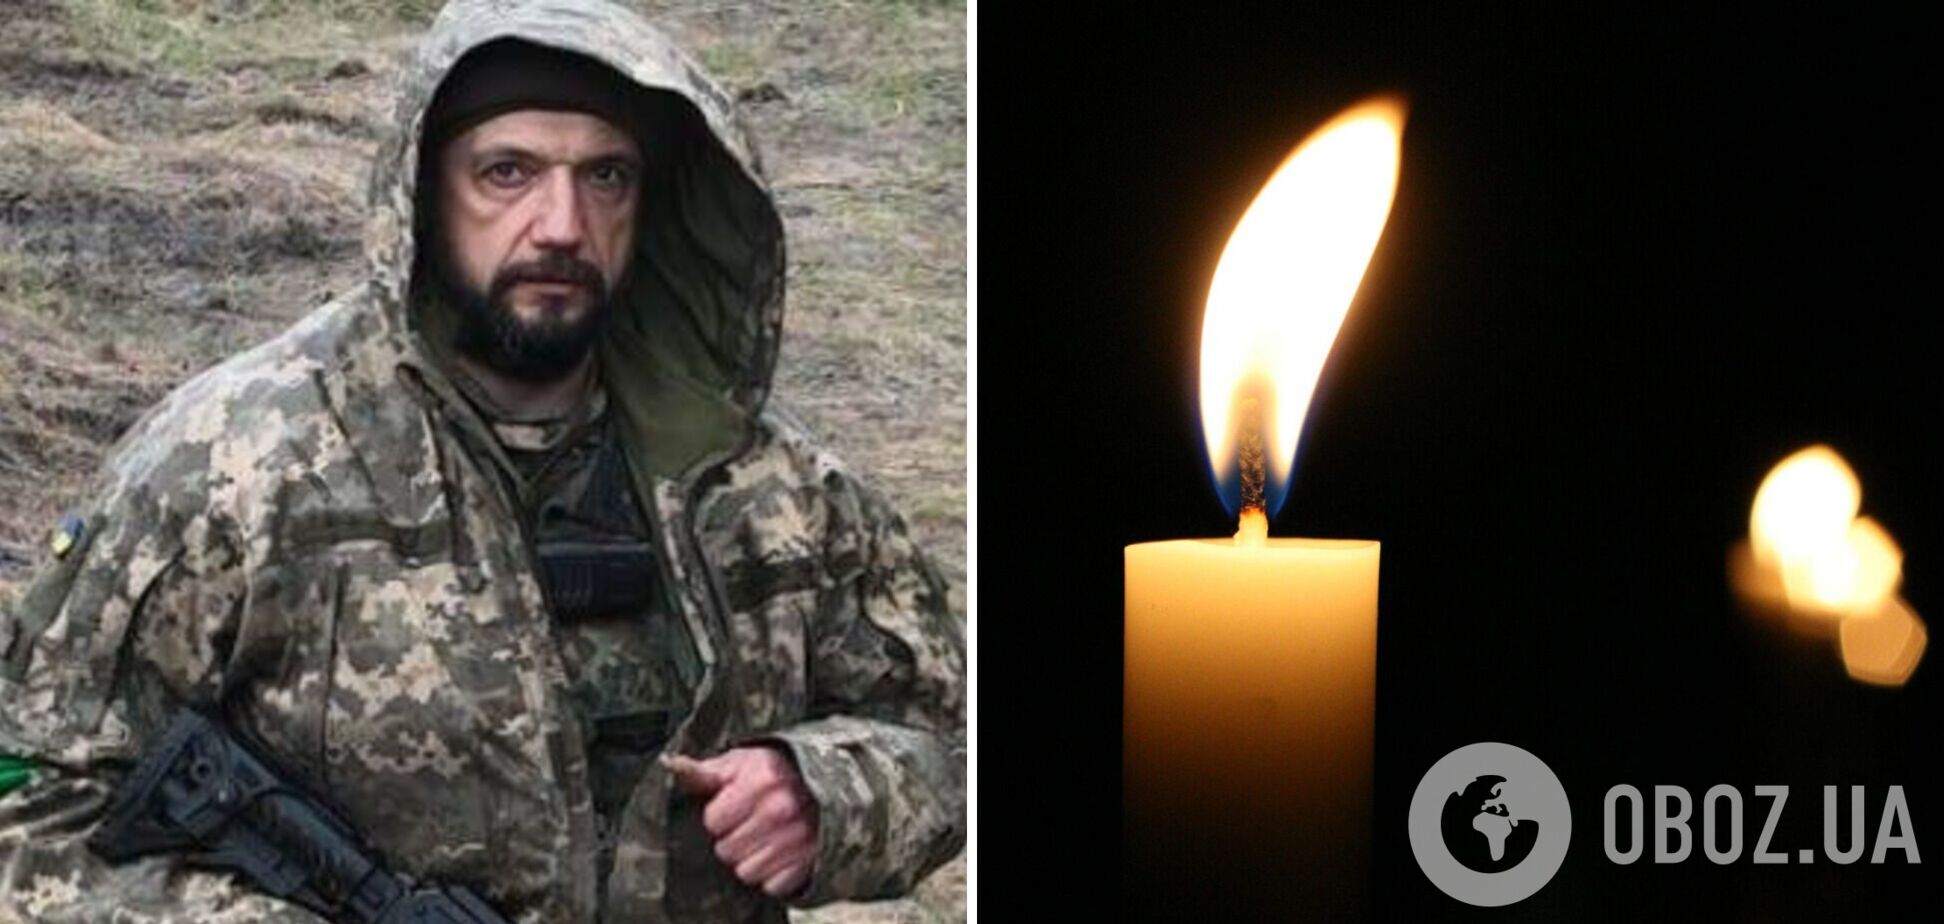 Названо имя еще одного украинского воина, жизнь которого забрала развязанная Россией война